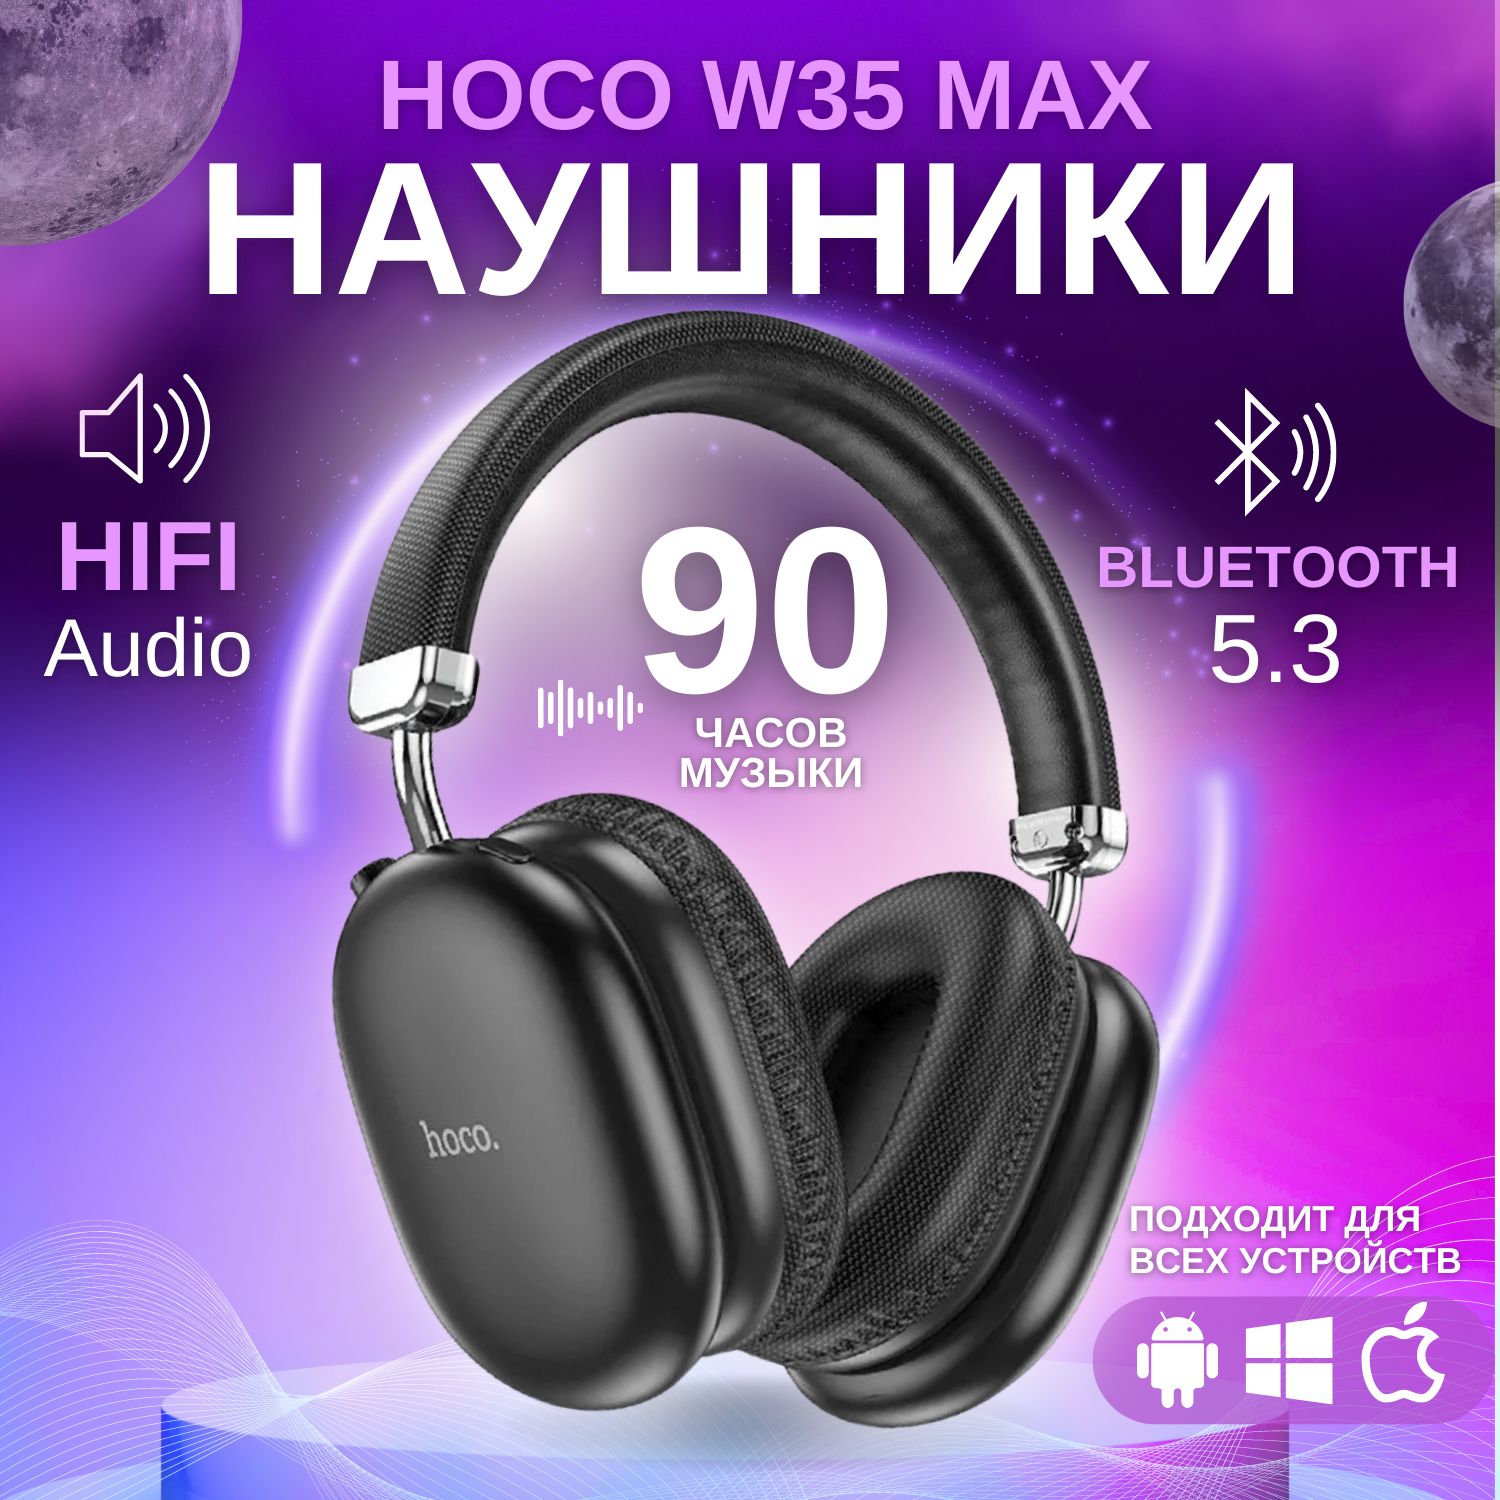 НаушникибеспроводныебольшиеHocoW35MAXсмикрофоном,полноразмерные,накладные,microSDслот,Bluetooth5.3,AUXкабель,черные